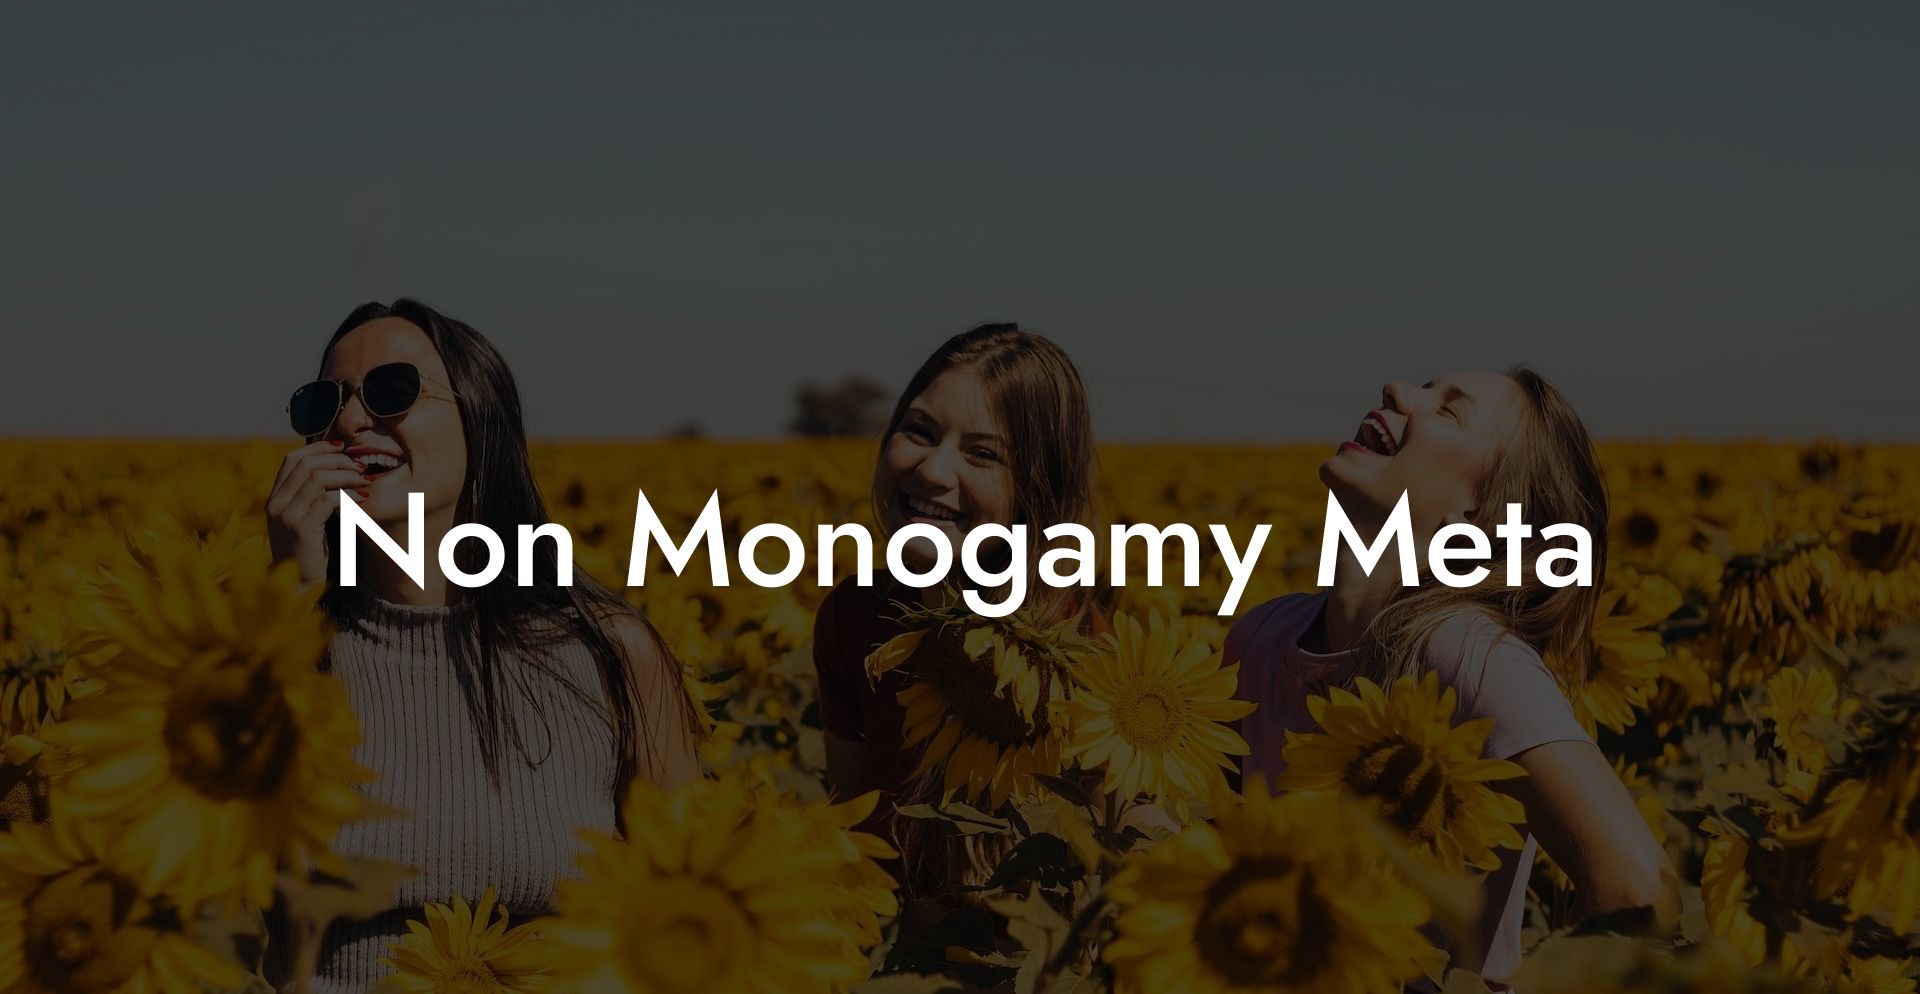 Non Monogamy Meta